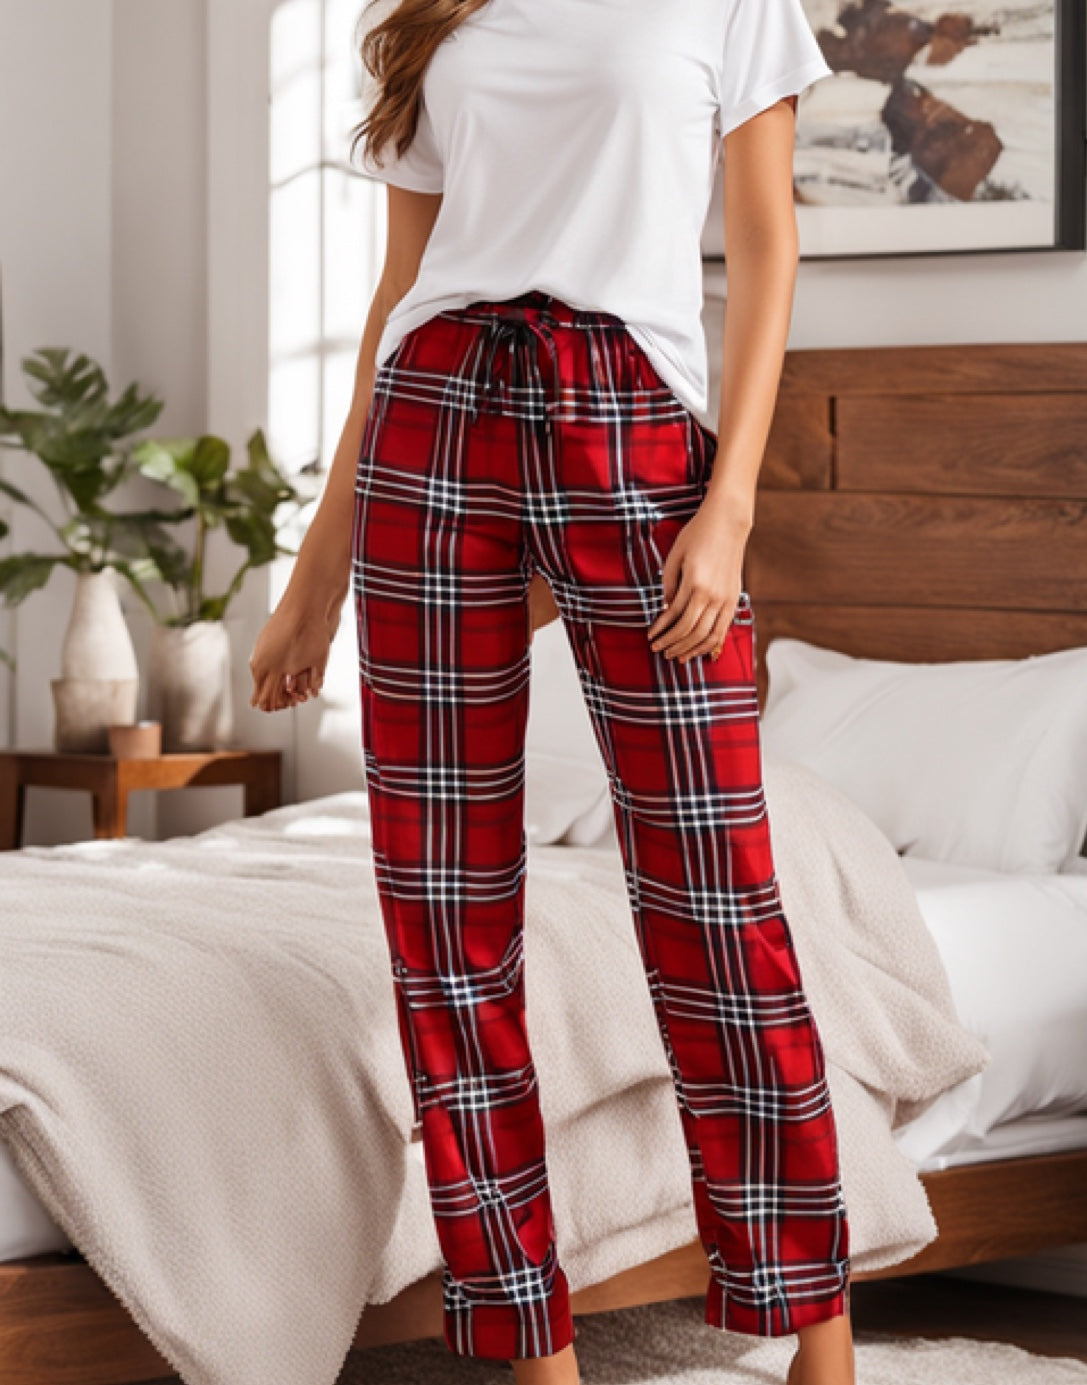 XS-XL Elastic Waist Pants PDF Sewing Pattern Women Pajama Style